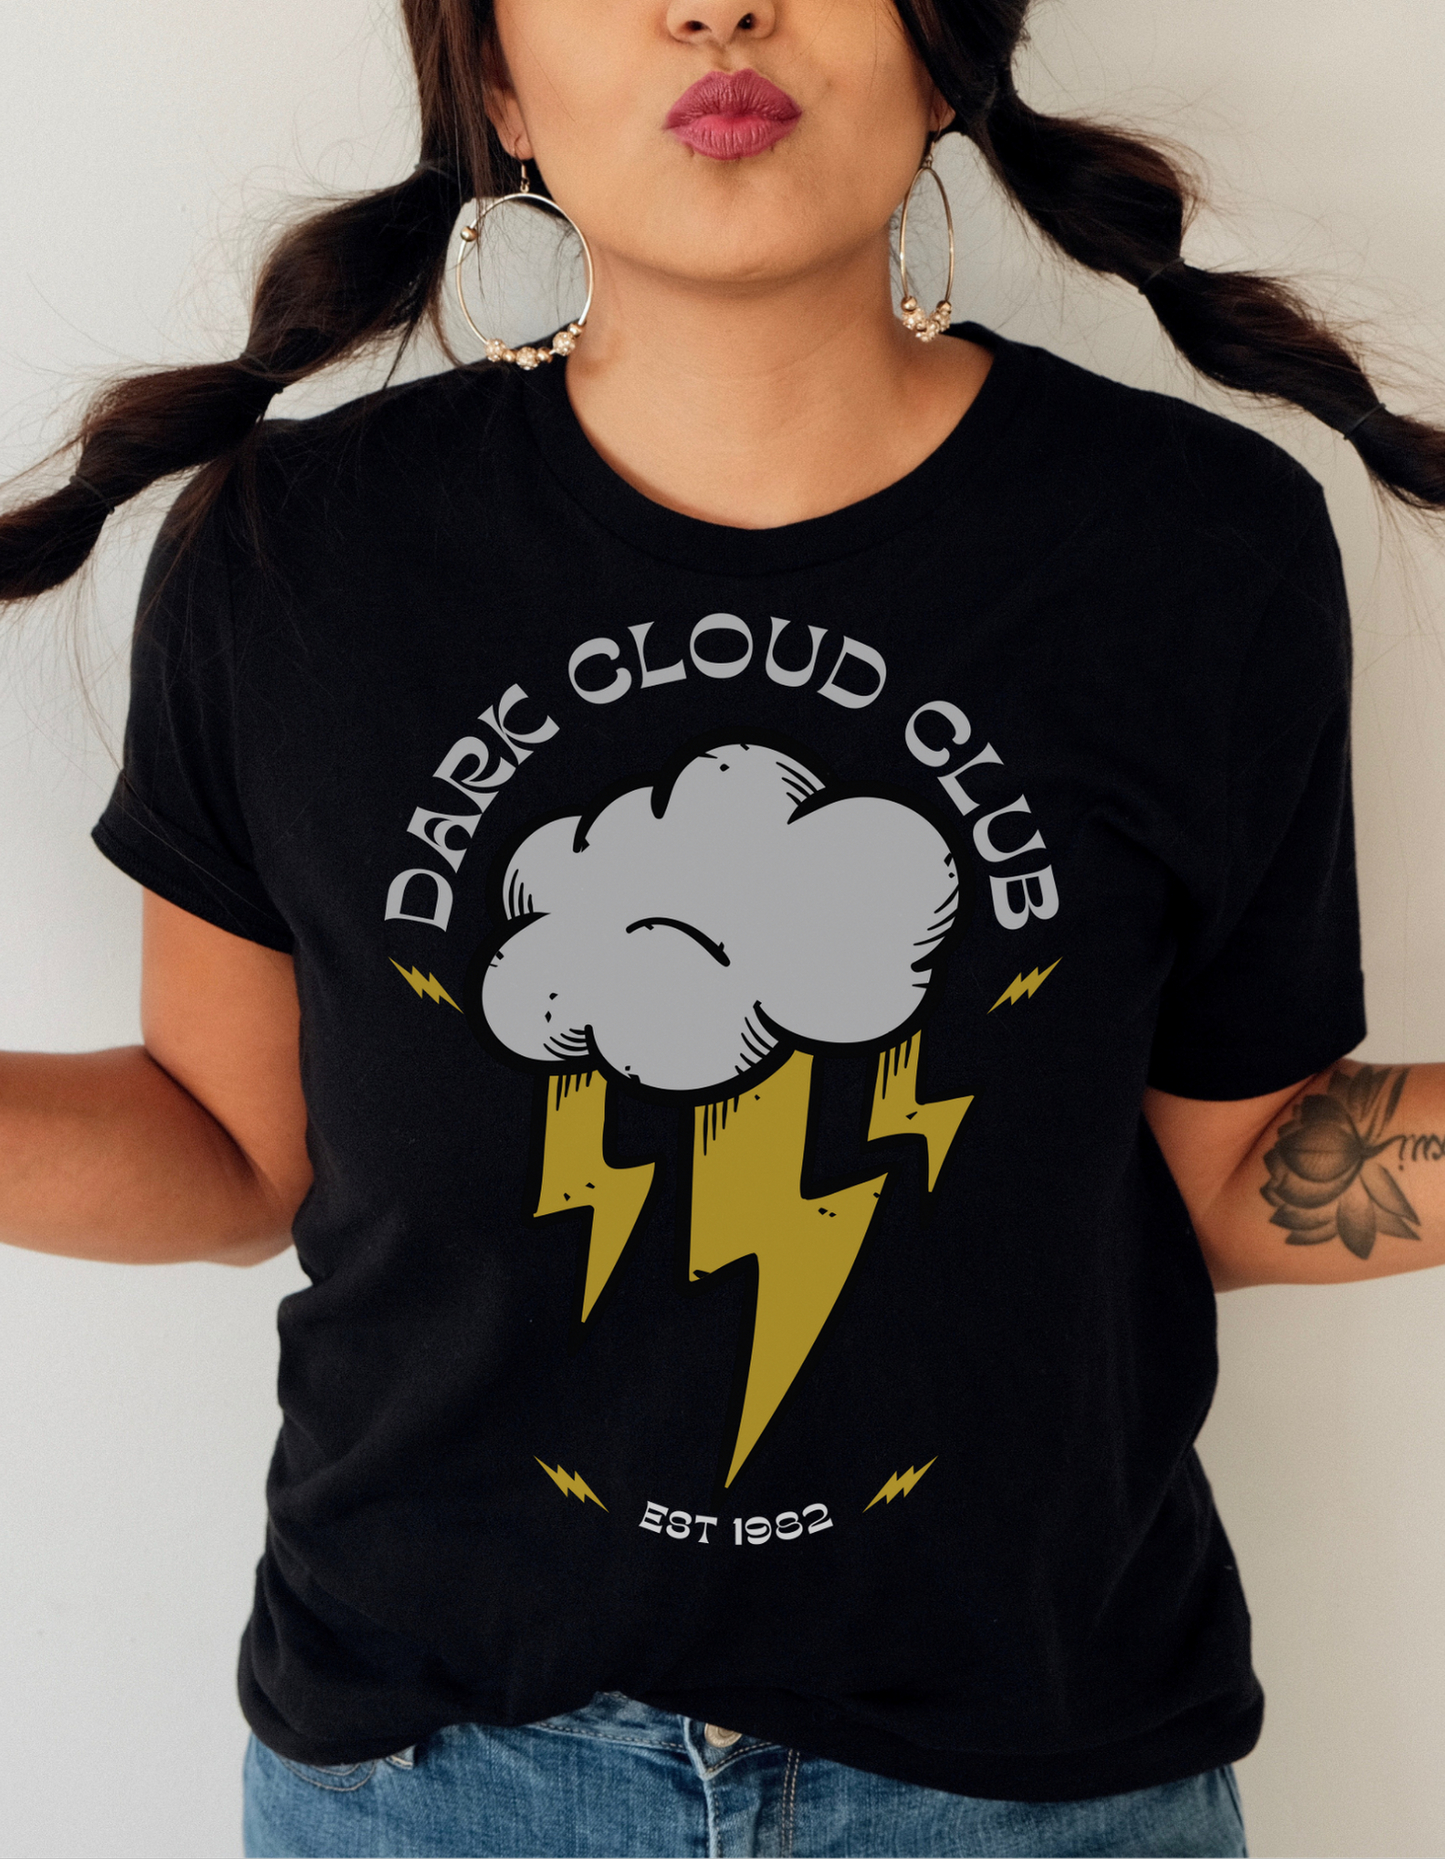 Dark Cloud Club Tattoo T-shirt / Traditional Tattoo Tee Shirt / Punk Rock Clothing Tshirt Rockabilly Psychobilly Freak Goth - Foxlark Crystal Jewelry